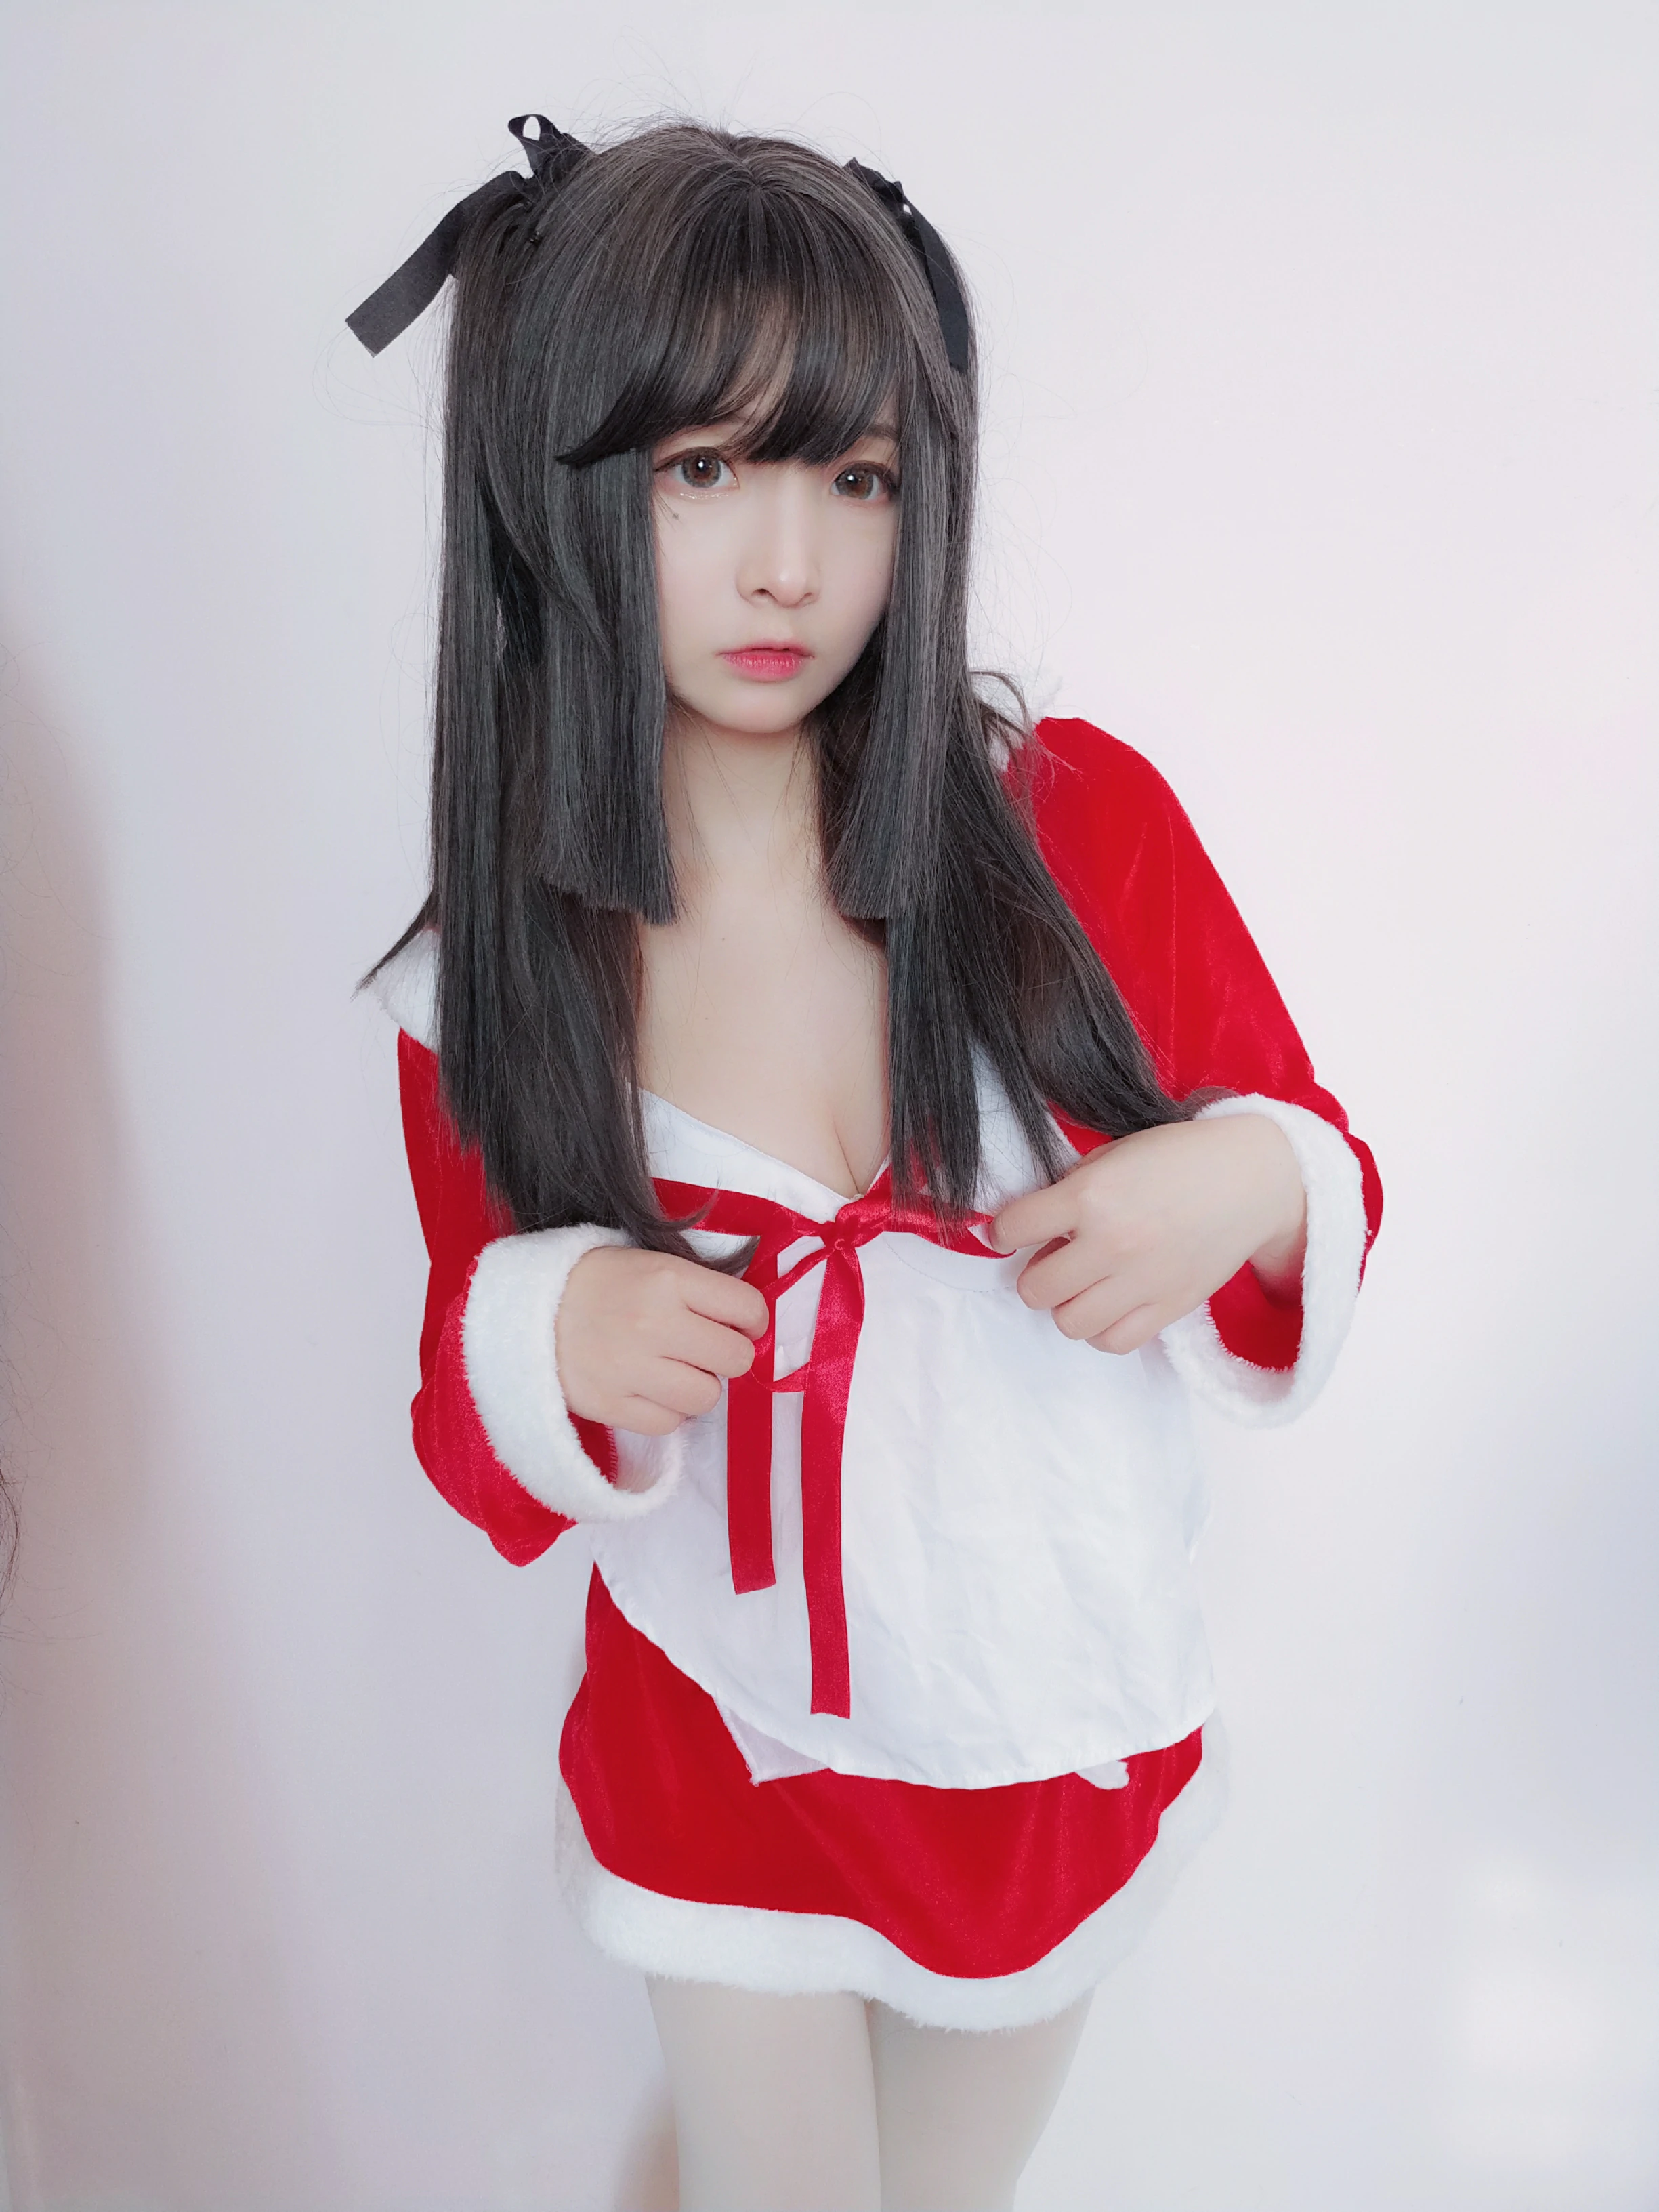 清纯萝莉少女 古川kagura 圣诞节 红色圣诞女郎制服裙加白色丝袜美腿私房写真,